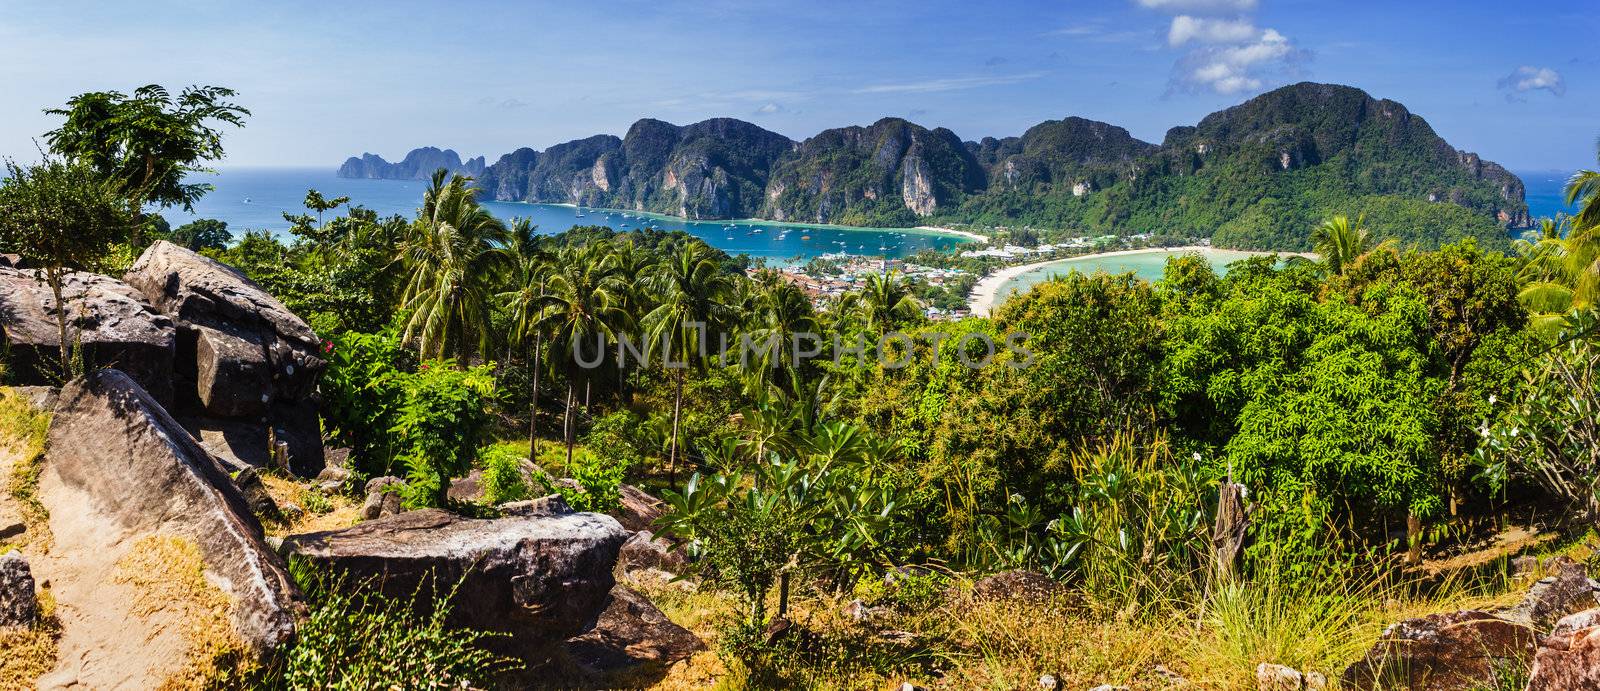 Beautiful view of Phi Phi island by oleg_zhukov